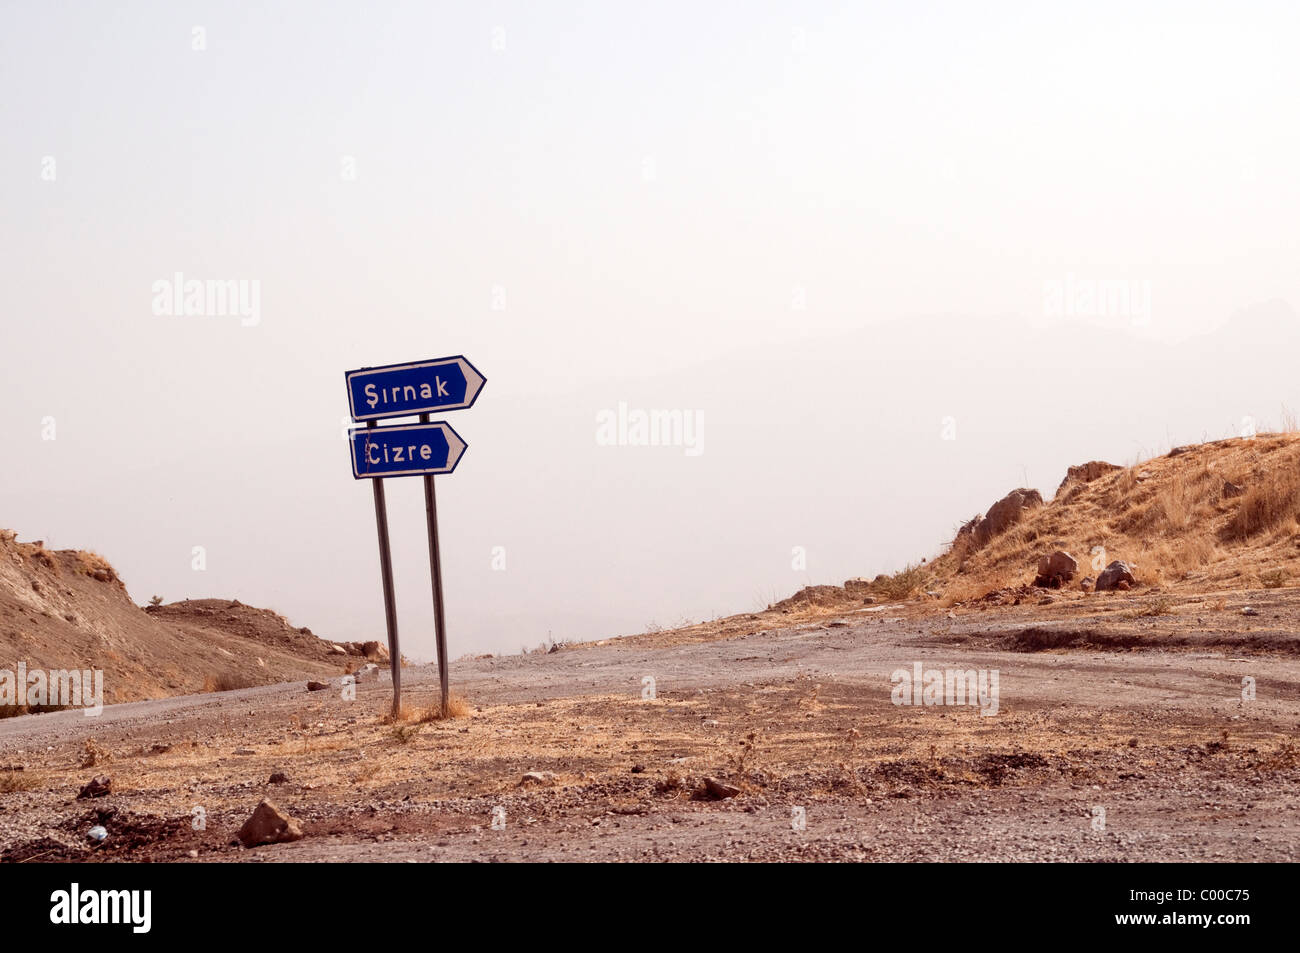 Un cartel en las montañas del sureste de Turquía indicando la dirección de la ciudades de Sirnak y Cizre. Foto de stock